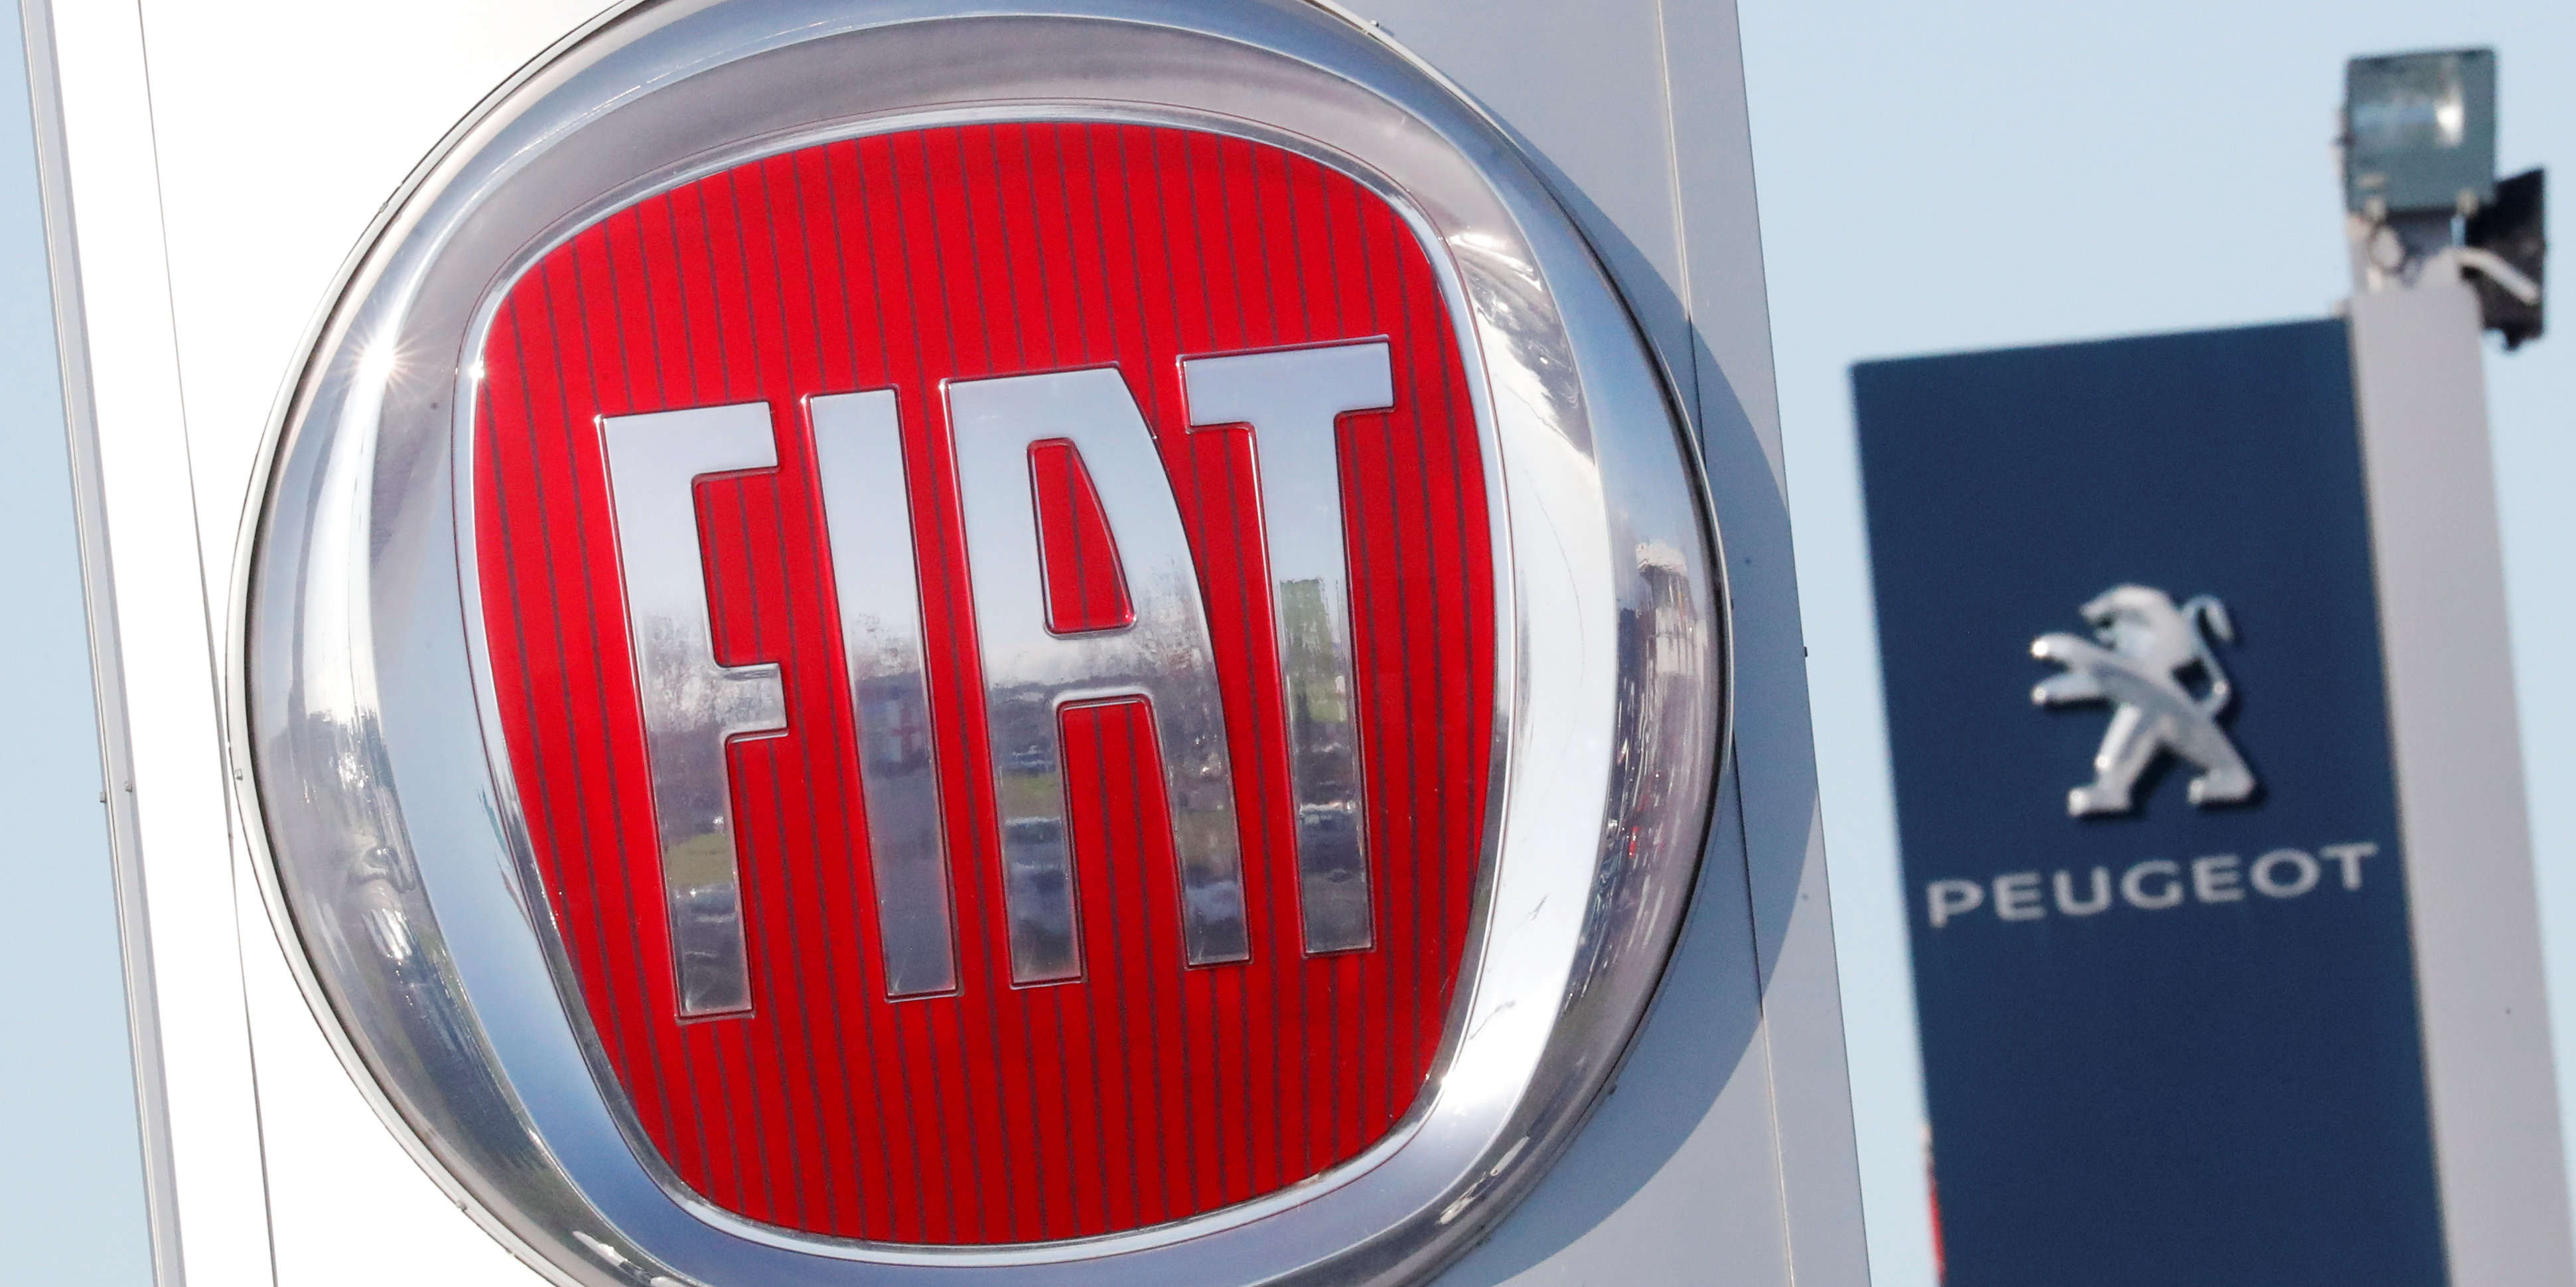 Fusion Fiat-PSA: la famille Peugeot veut augmenter sa participation de 2,5%